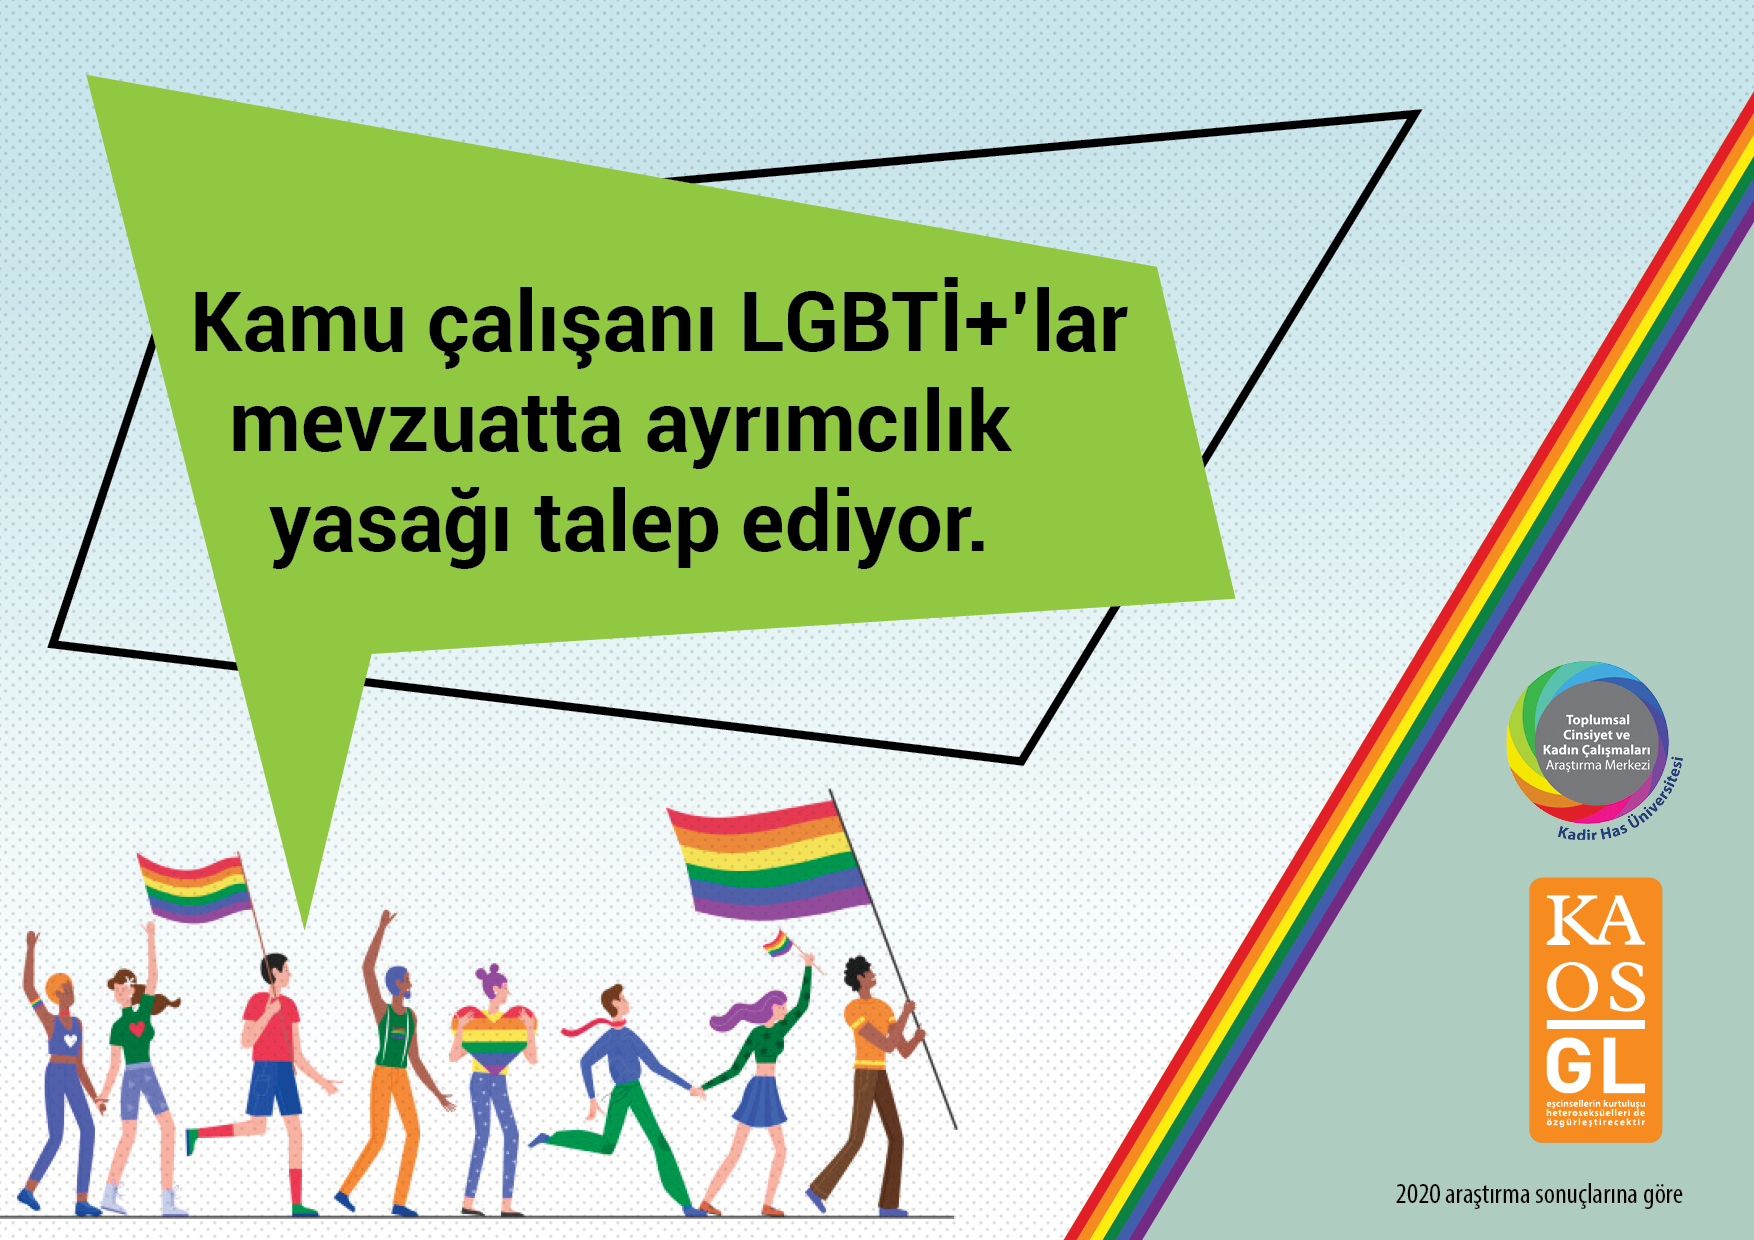 LGBTİ+ çalışanlar mevzuatta ayrımcılık yasağı istiyor | Kaos GL - LGBTİ+ Haber Portalı Haber